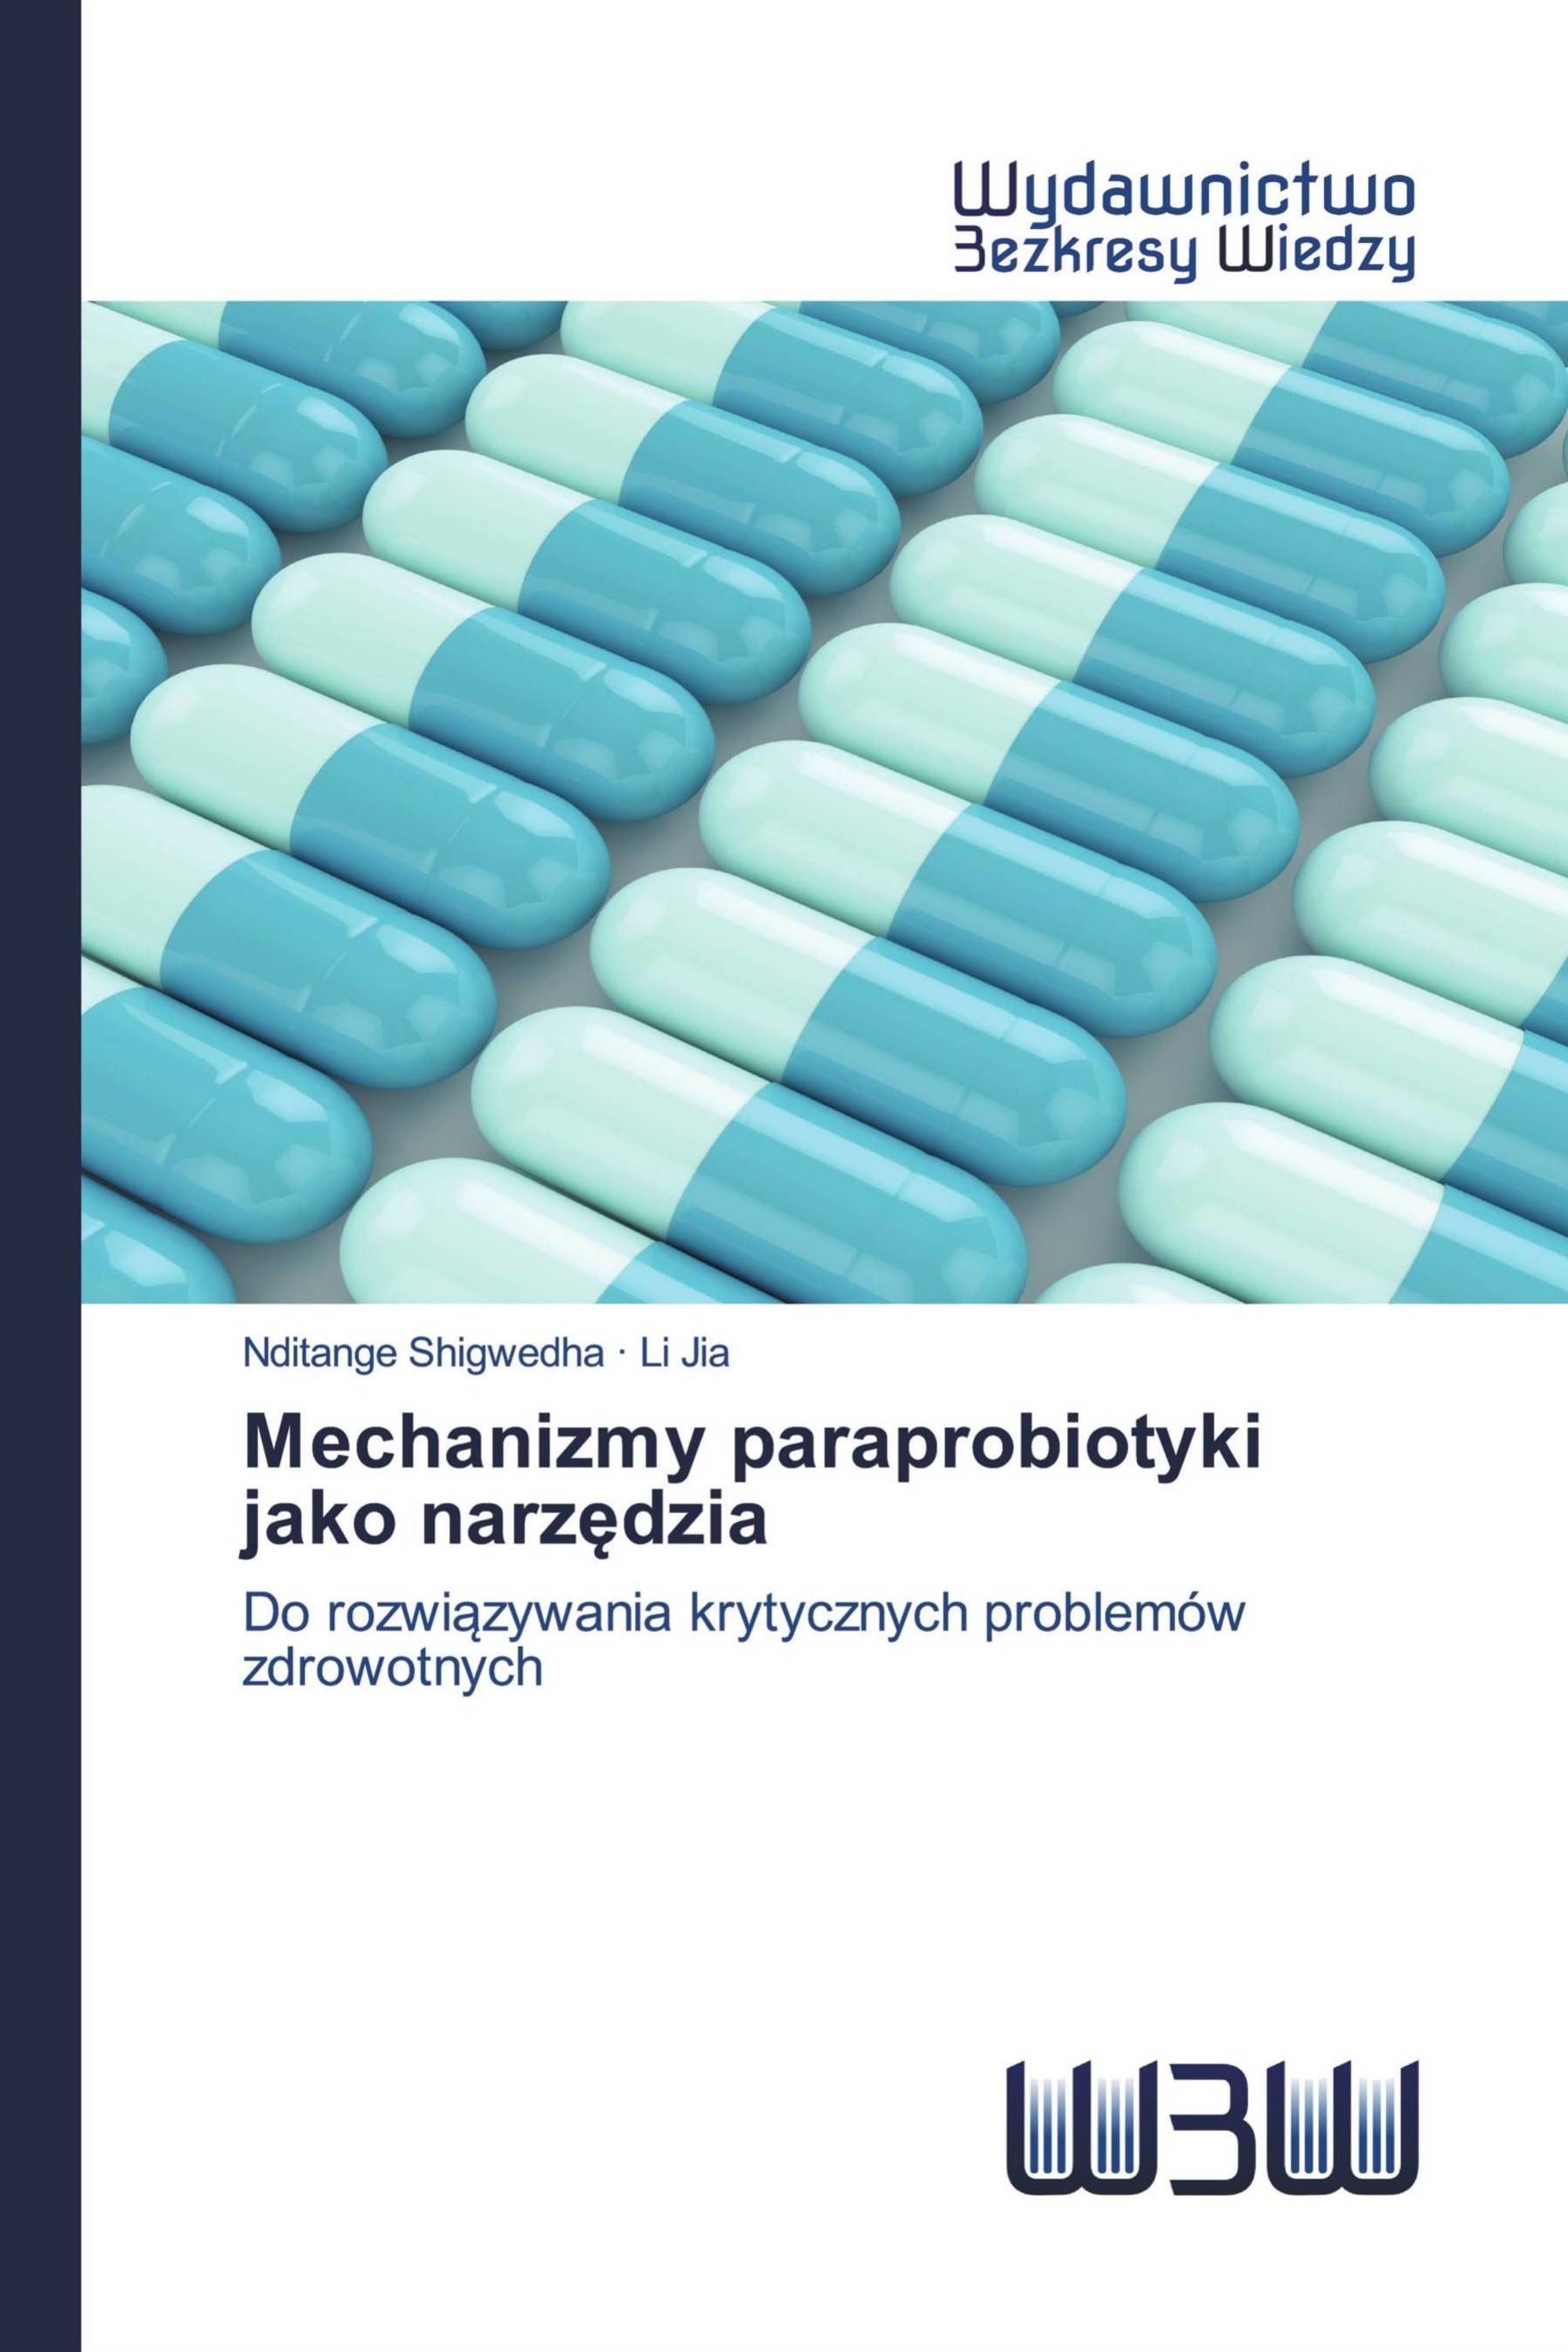 Mechanizmy paraprobiotyki jako narzędzia